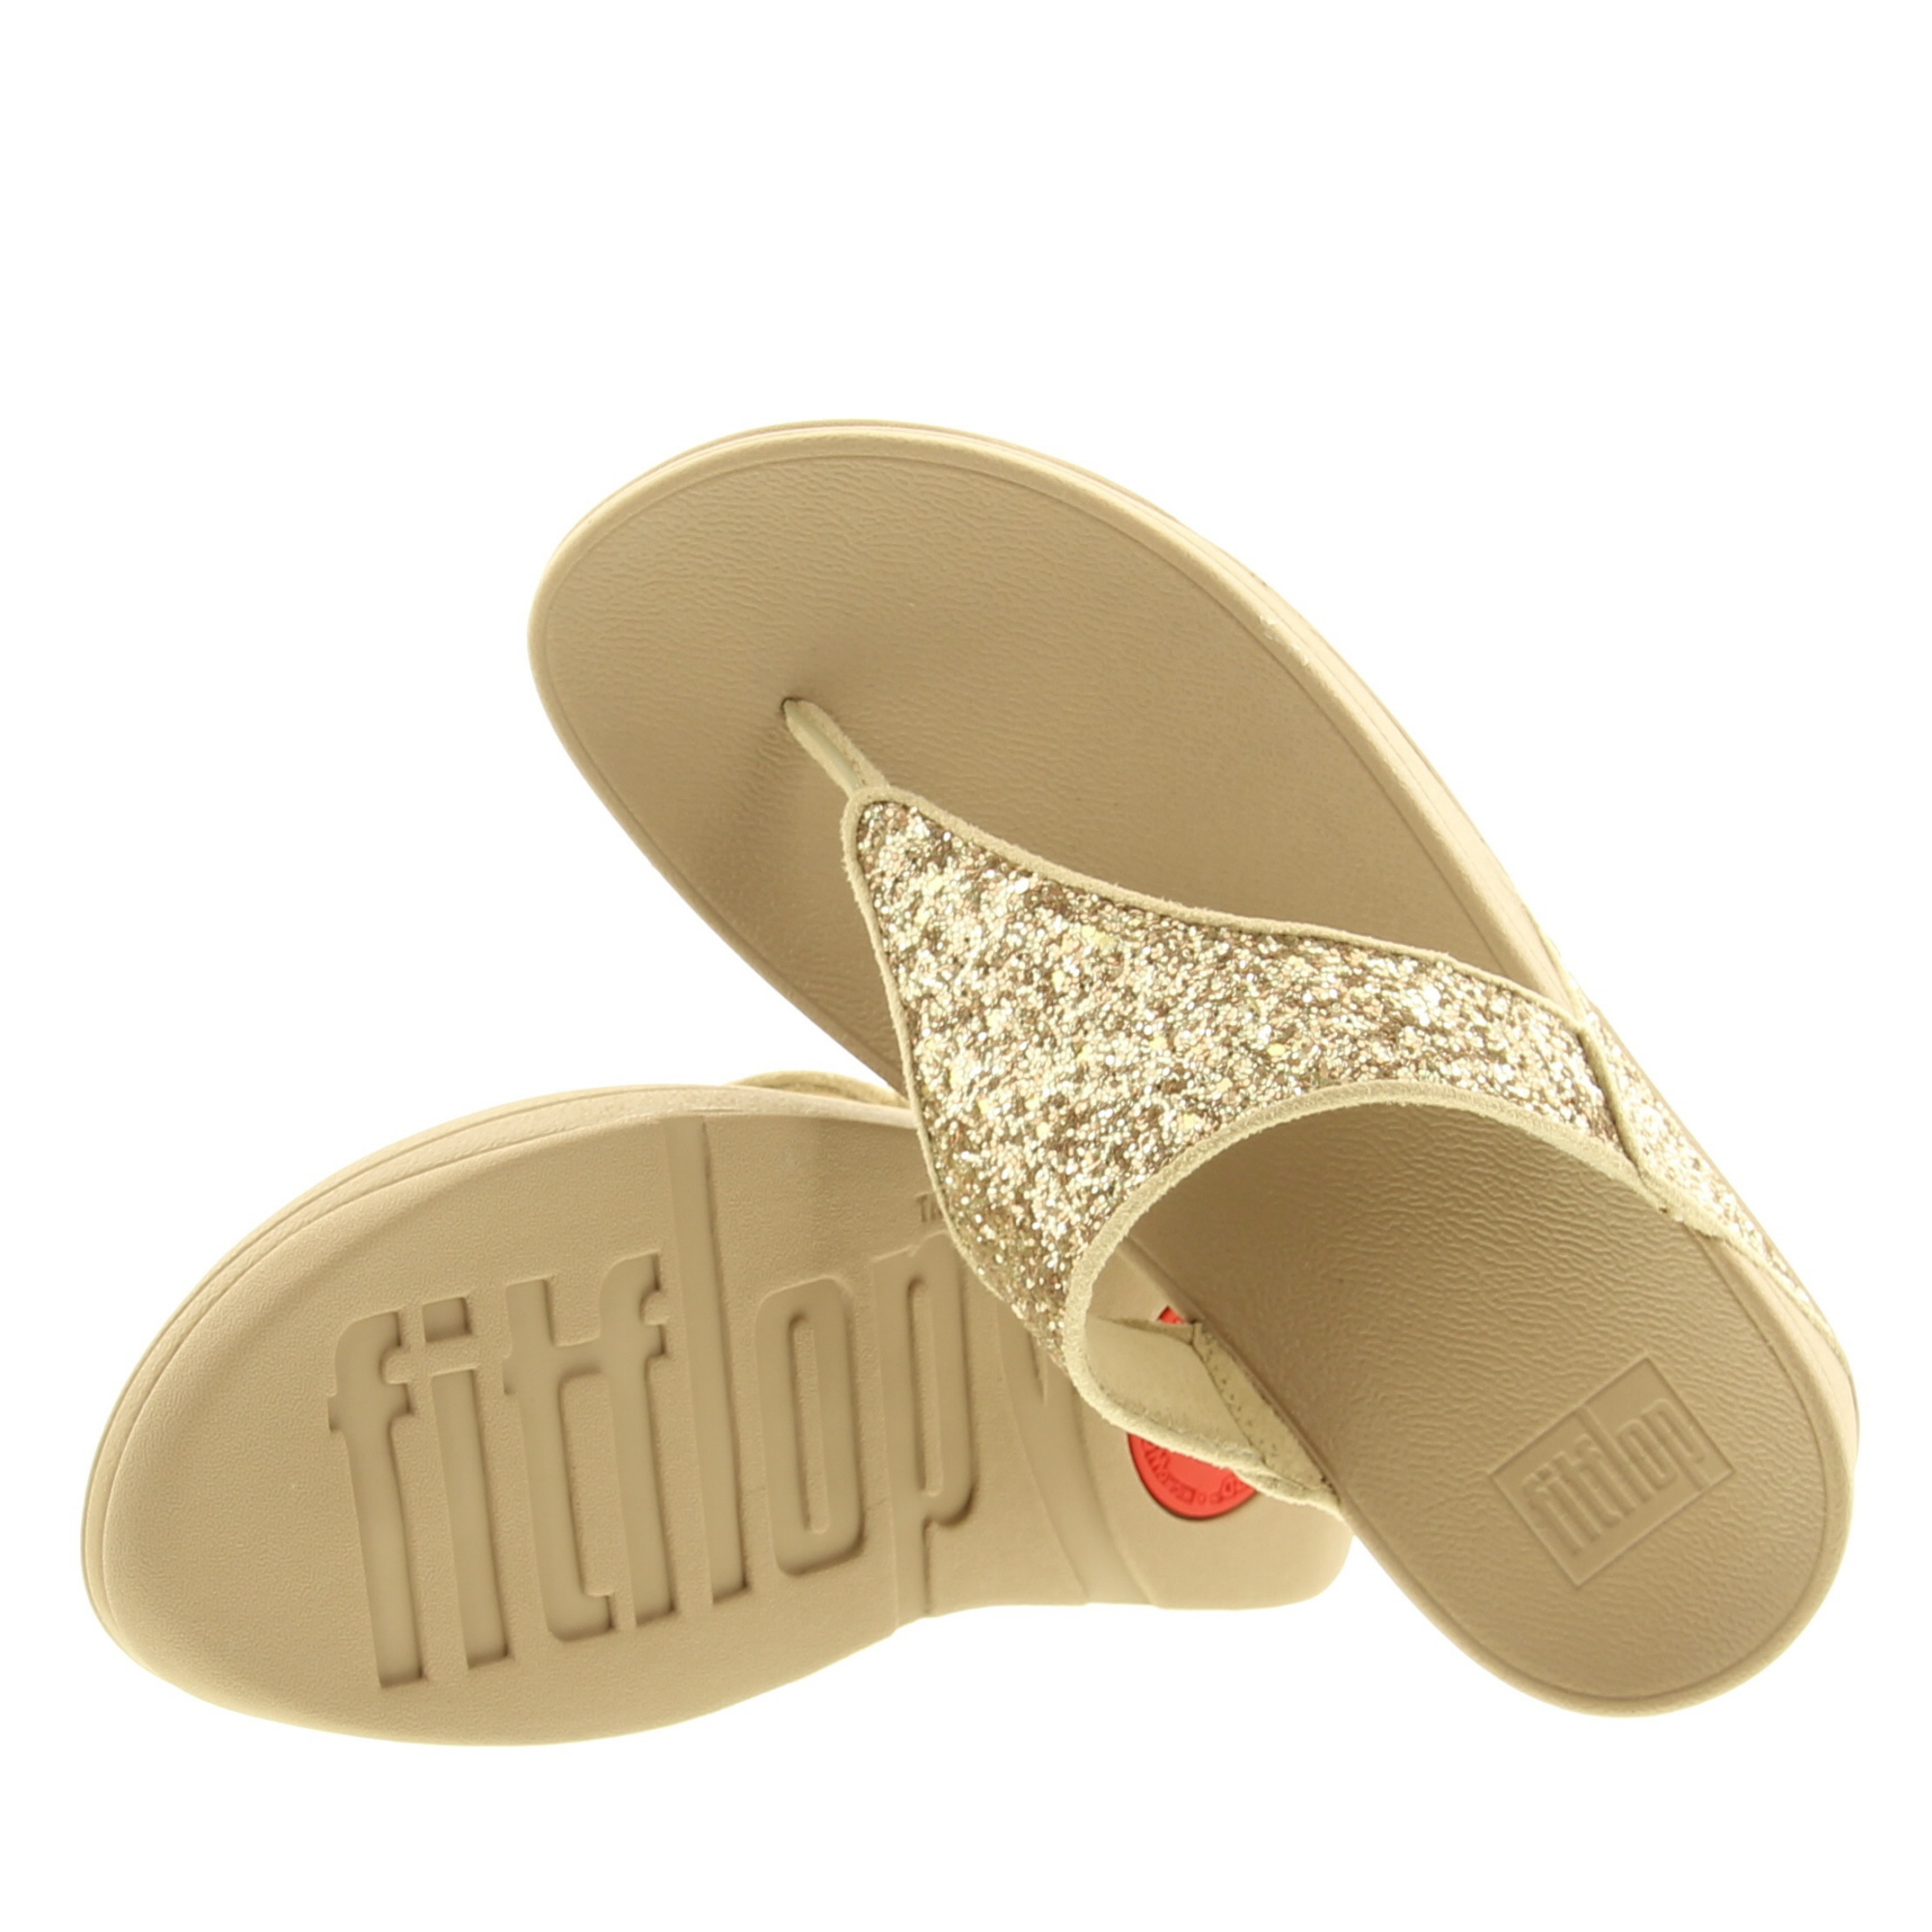 Fitflop X03 Lulu Glitter Toe-Thongs PU A94 Glitter Latte Beige